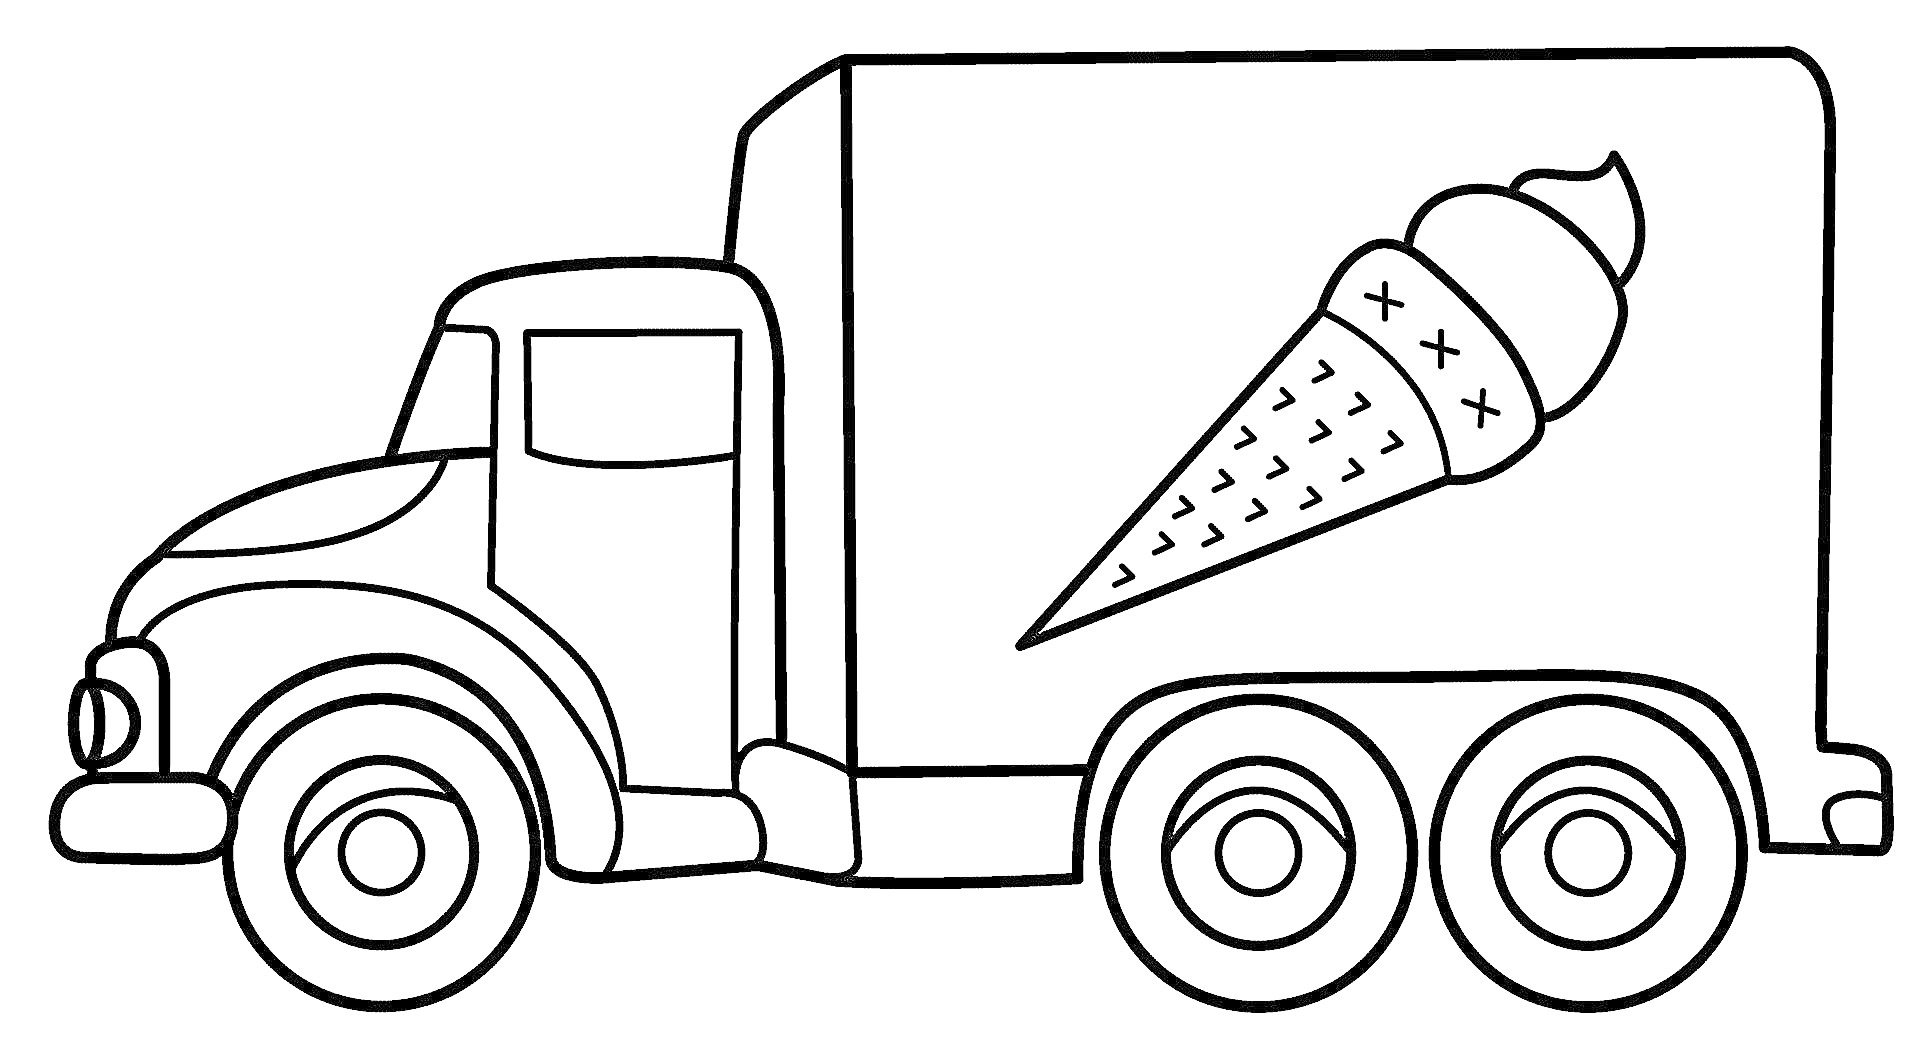 Раскраска Грузовик с мороженым, грузовик с кабиной и кузовом, мороженое нарисовано на кузове